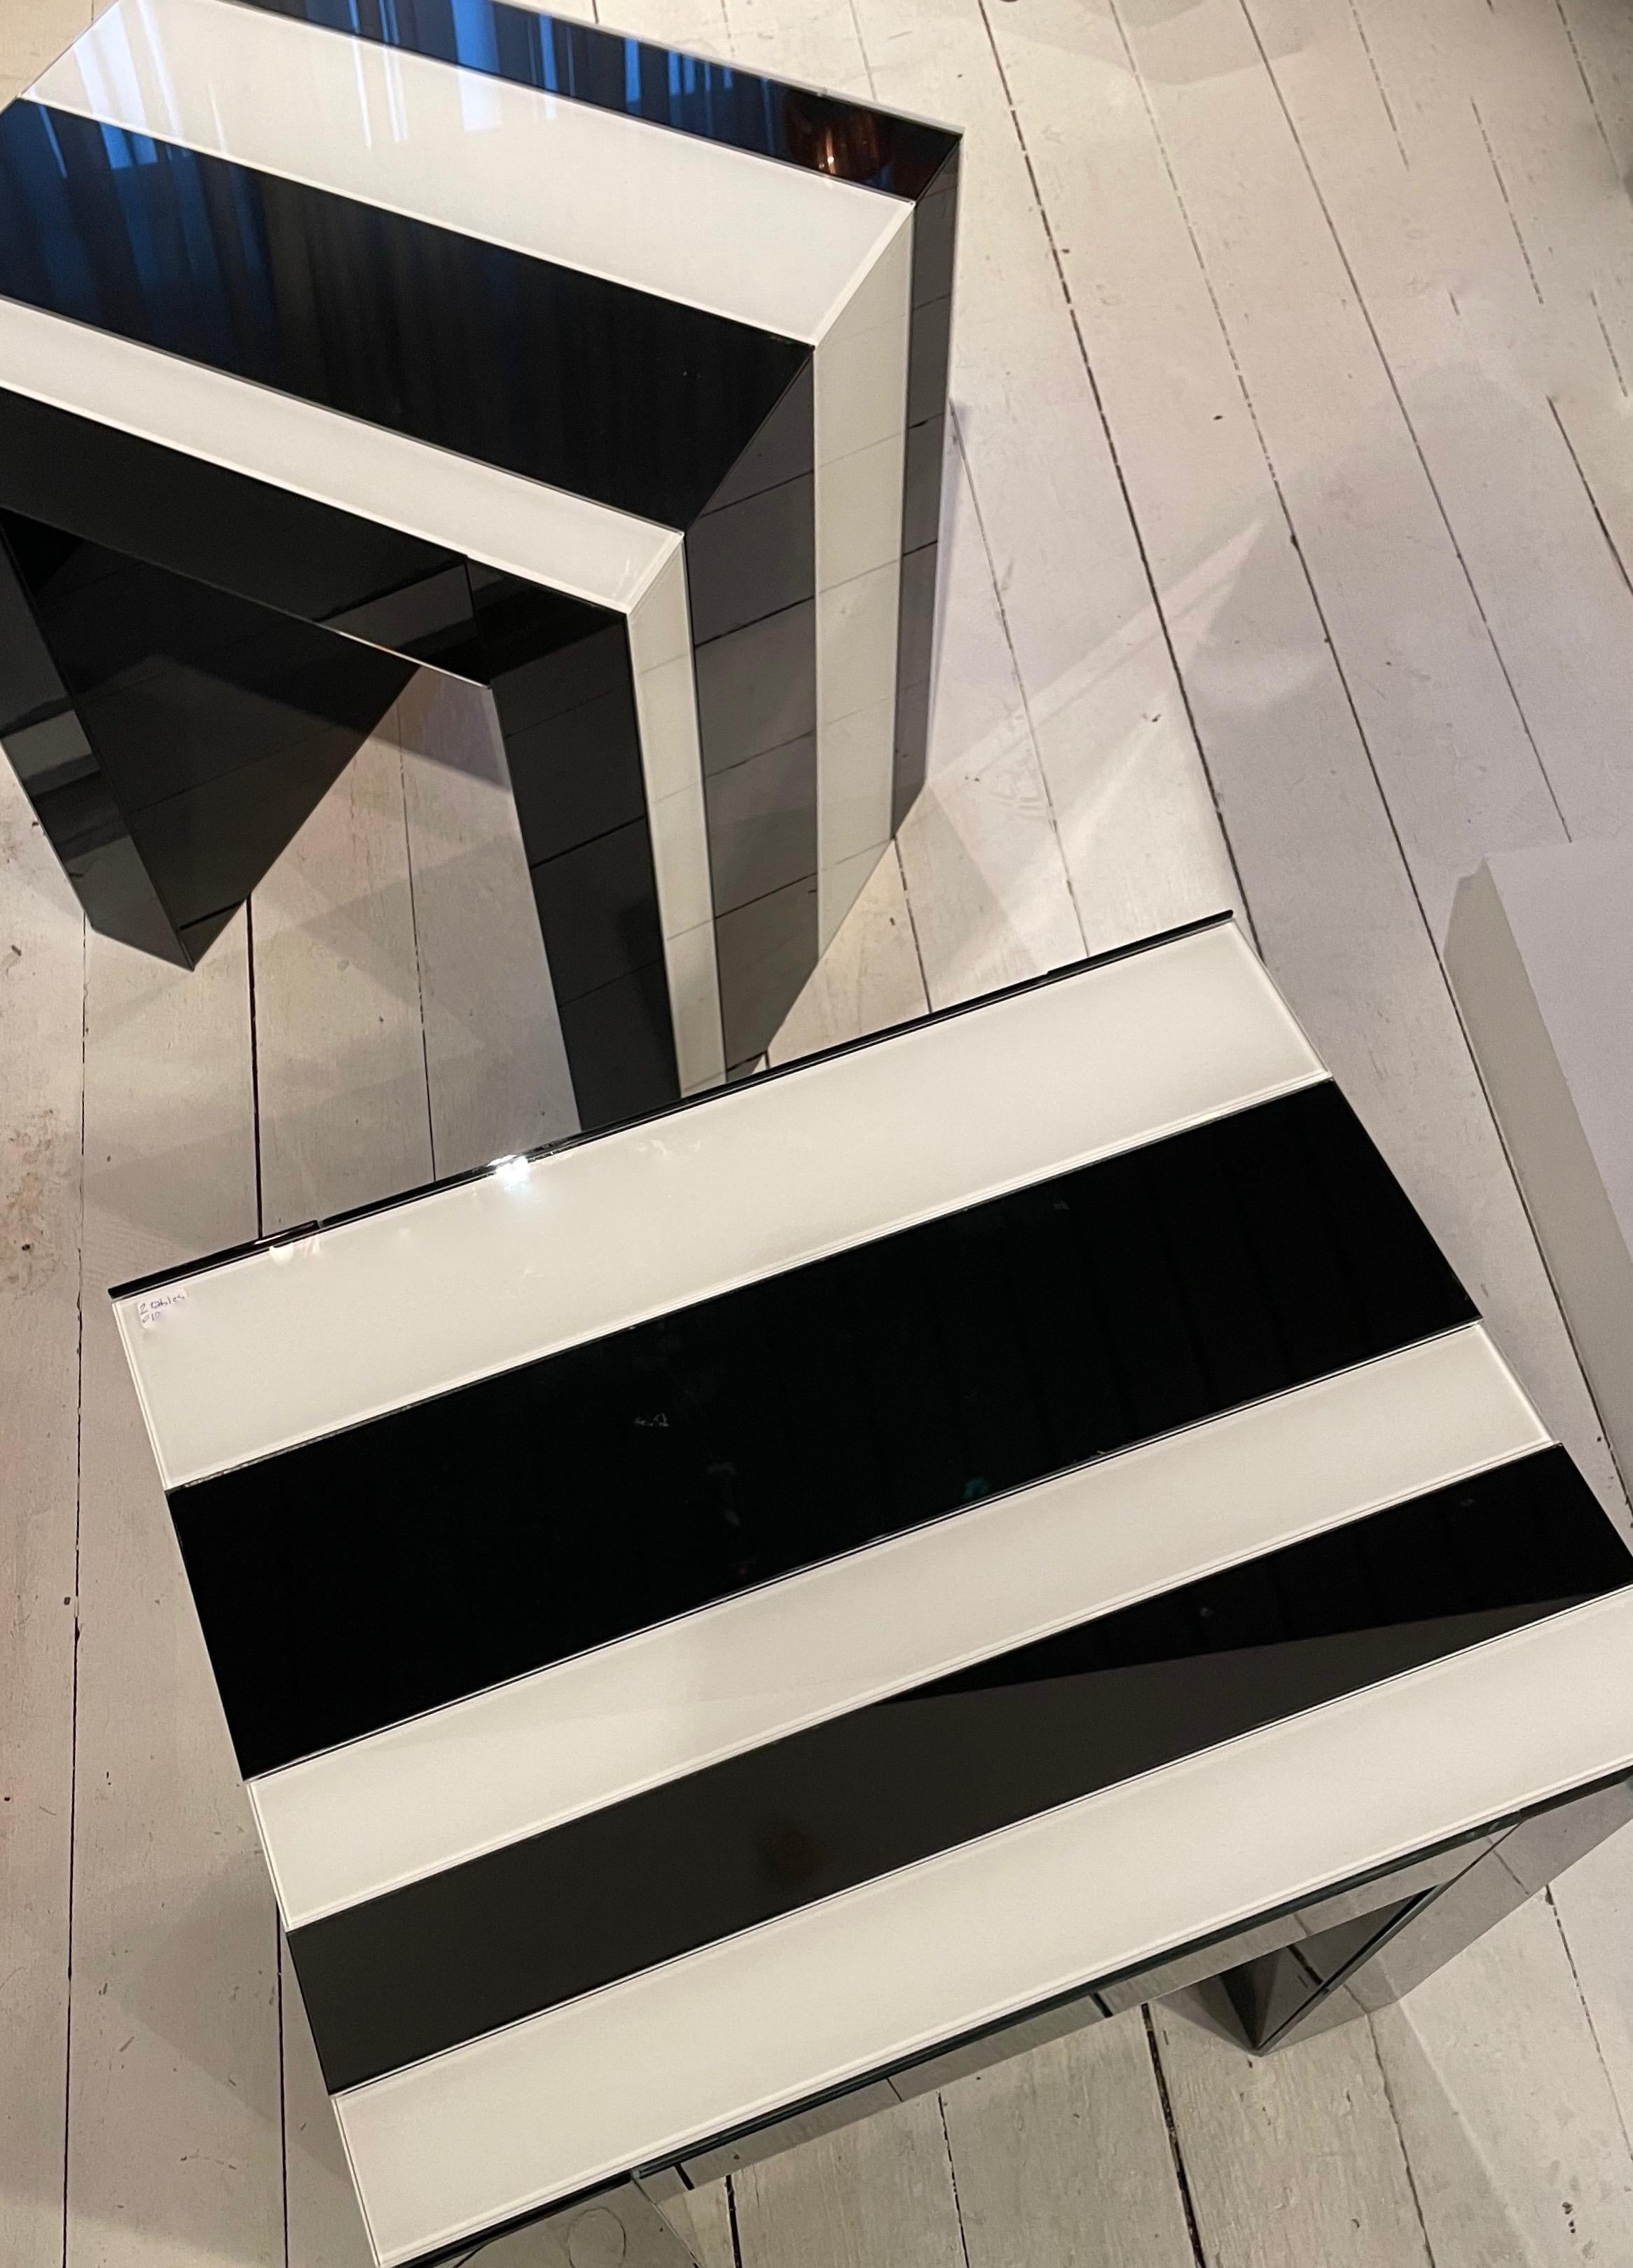 Une paire de tables d'appoint à rayures asymétriques noires et blanches dans l'esprit de l'artiste français Daniel Buren.
Parfait état vintage.
France 2000.